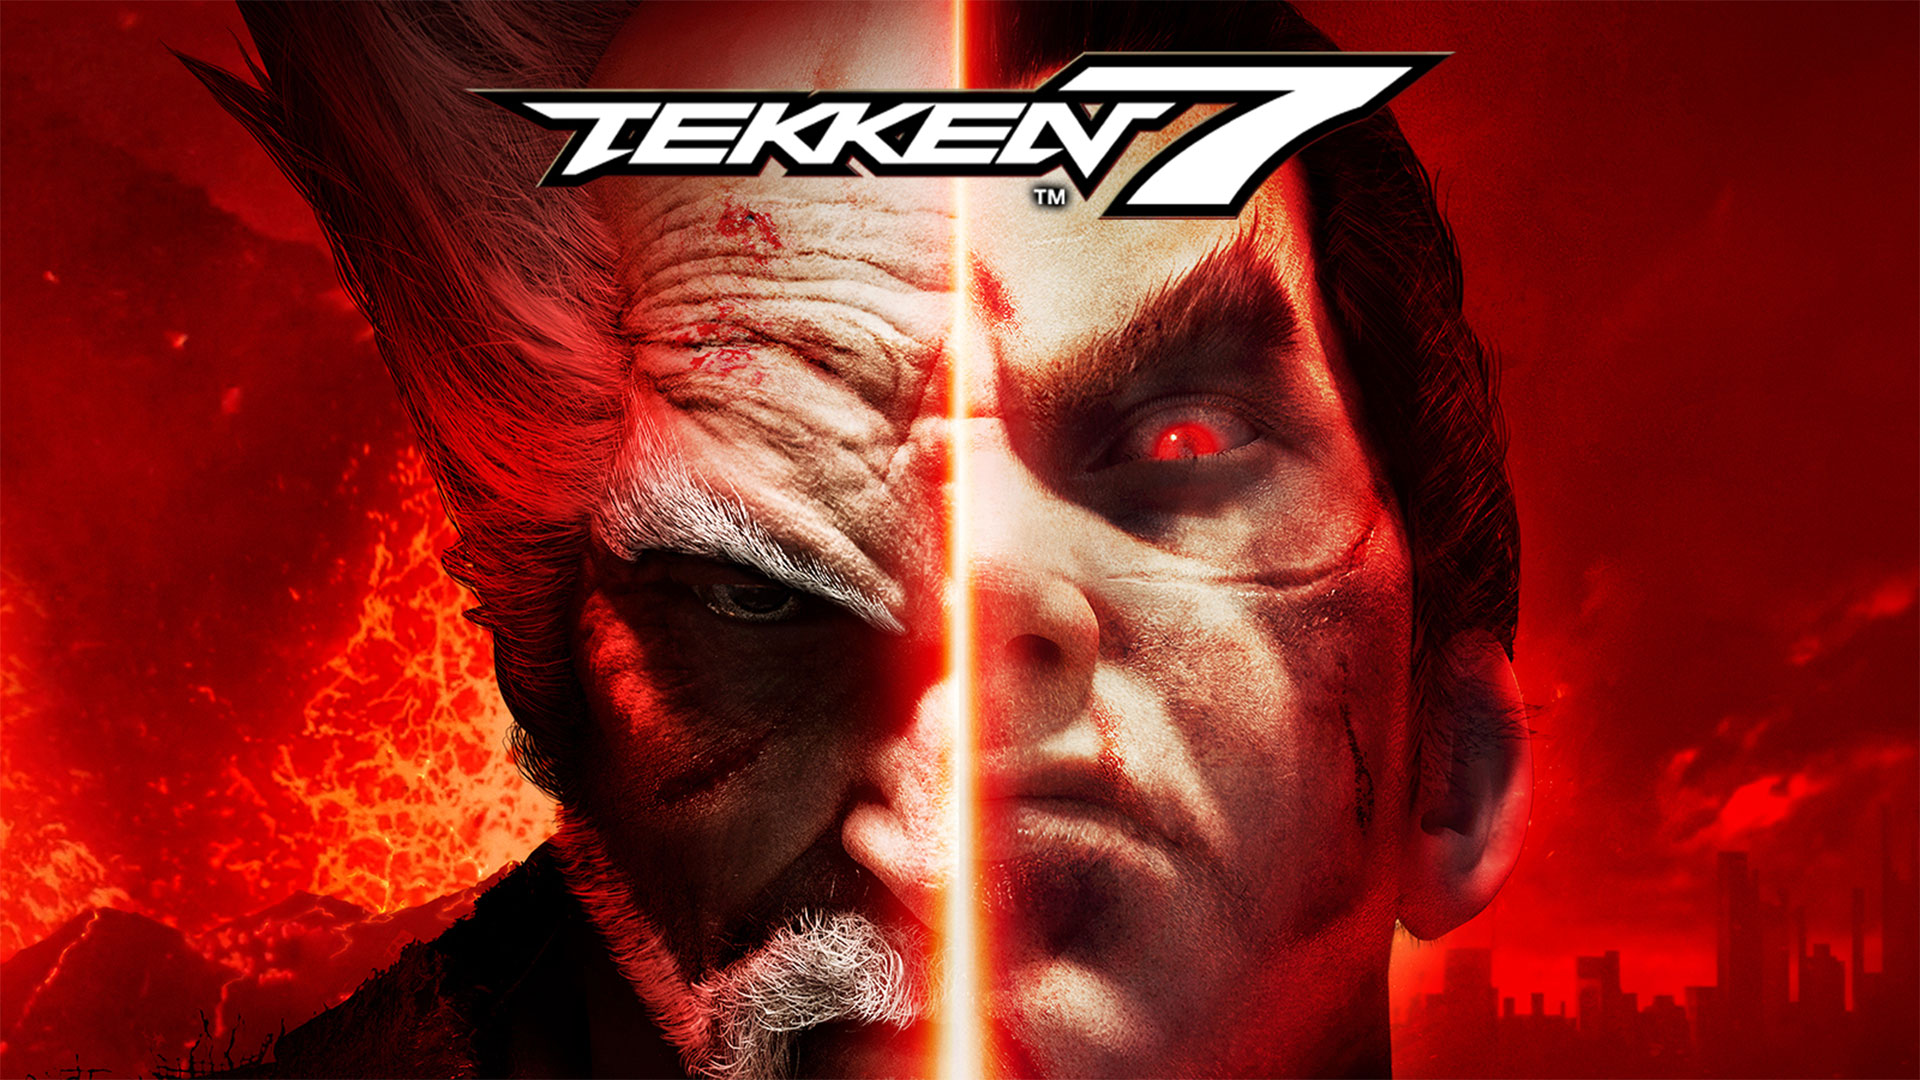 เกมหมัดเหล็ก Tekken 7 ทำยอดขายรวมทั่วโลกทะลุ 3 ล้านชุดเรียบร้อยแล้ว